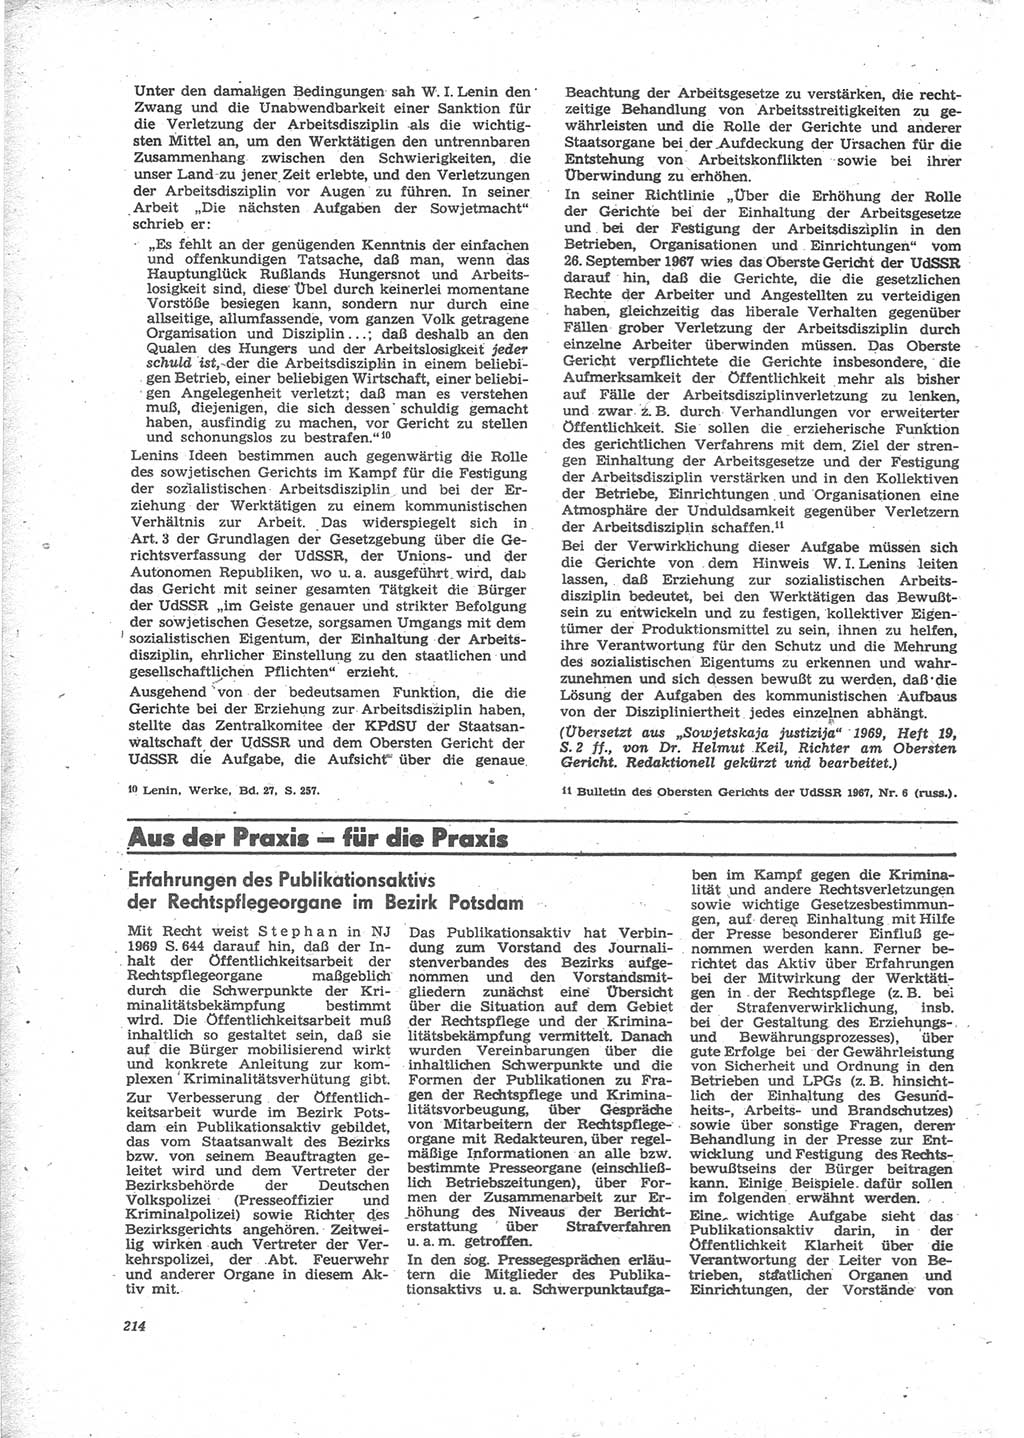 Neue Justiz (NJ), Zeitschrift für Recht und Rechtswissenschaft [Deutsche Demokratische Republik (DDR)], 24. Jahrgang 1970, Seite 214 (NJ DDR 1970, S. 214)